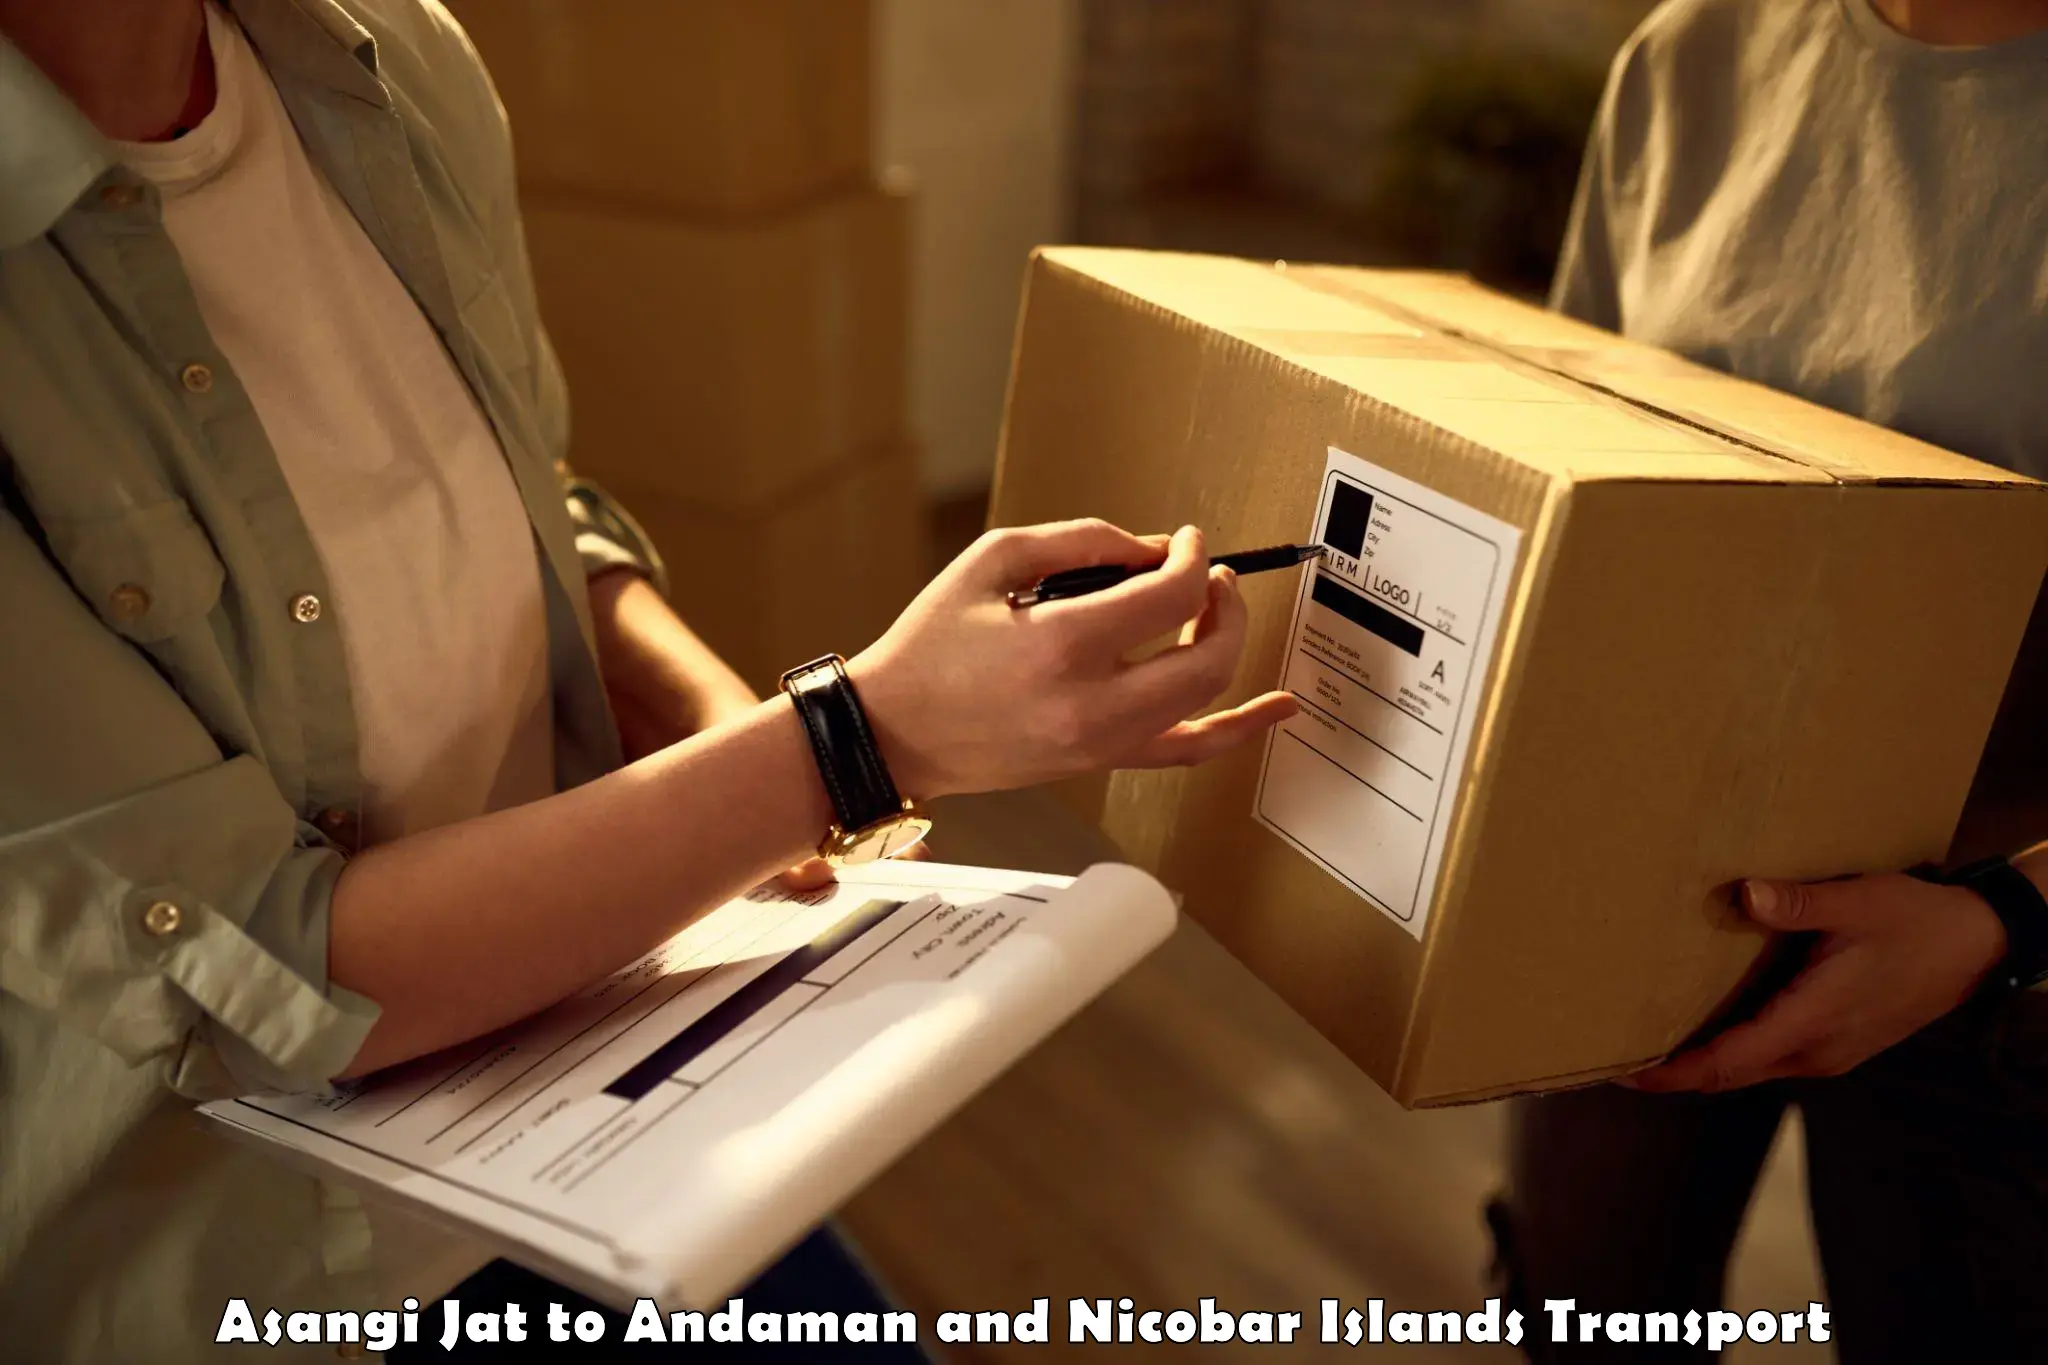 Cargo train transport services Asangi Jat to Andaman and Nicobar Islands